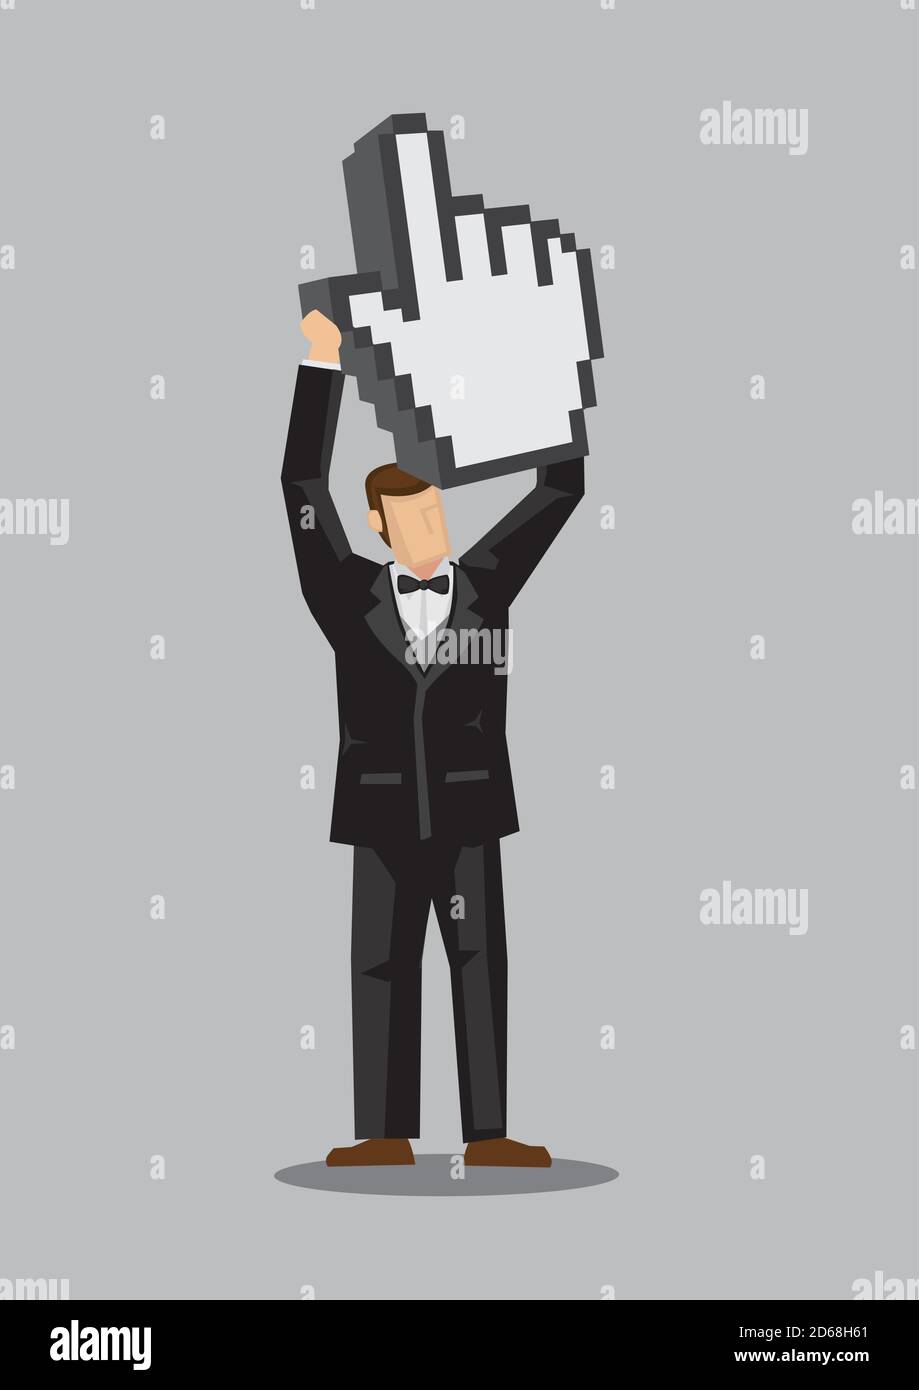 Illustrazione vettoriale del carattere maschile cartoon ben vestito che tiene in su una mano digitale pixelata con il pollice e il dito indice, icona web per clic, isolat Illustrazione Vettoriale